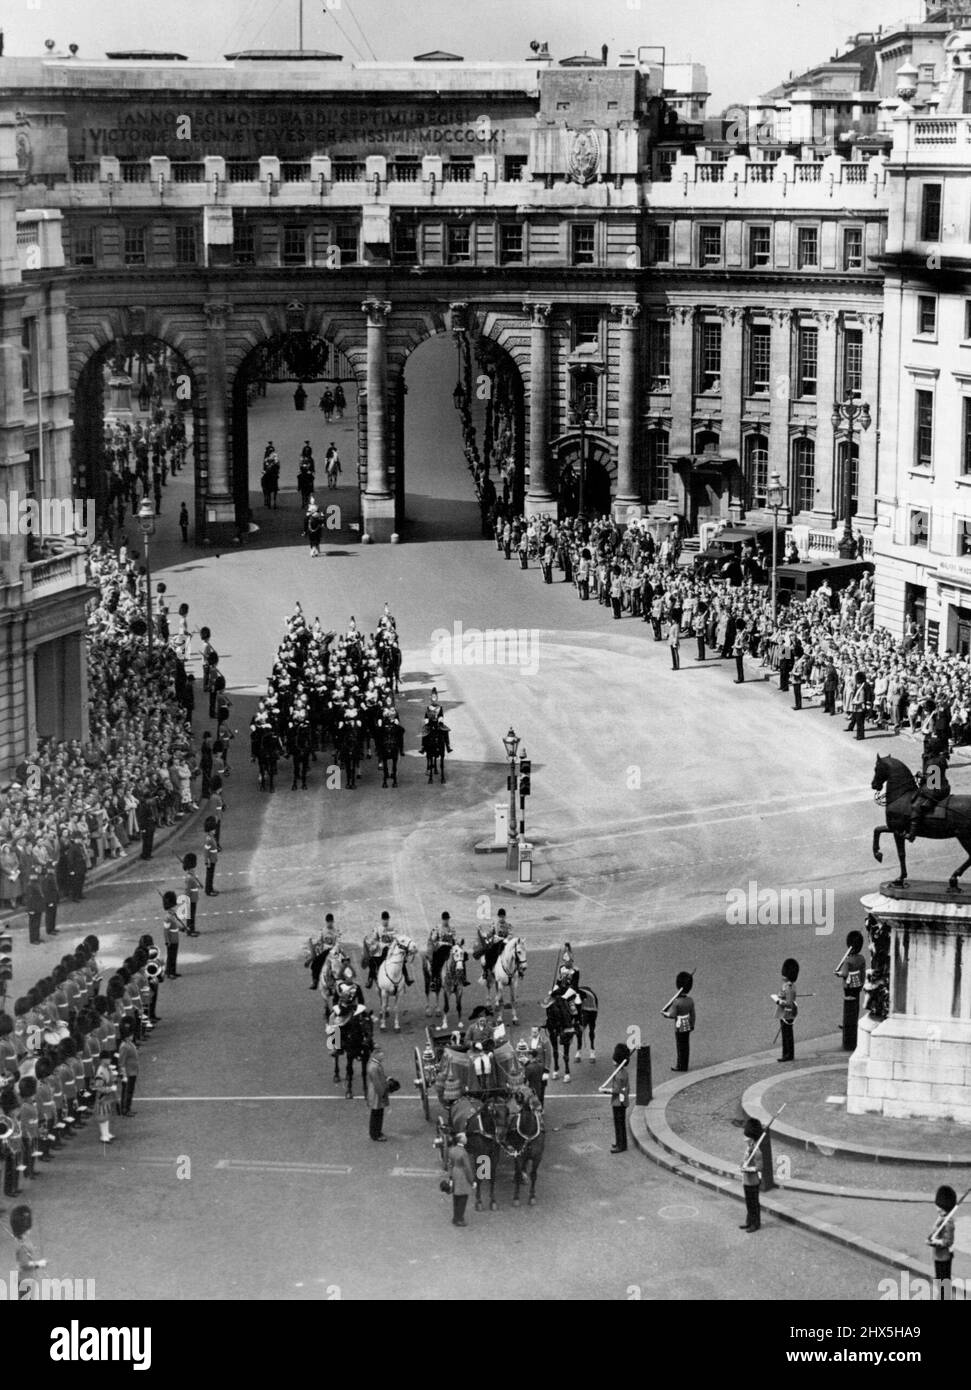 Die Krönung Wurde Am Charing Cross Ausgerufen. Allgemeine Ansicht am Charing Cross, als die Proklamation von einem offenen Wagen durch den Lancaster Herald, Mr. A.G.D. verlesen wurde Russell. Mit einem jahrhundertealten Zeremoniell wurde heute (Samstag) in London das Krönungsdatum von Königin Elizabeth II., 2. Juni 1953, ausgerufen. Die Proklamation wurde zuerst vom Balkon des St. James's Palace gelesen. Dann gingen die Herolde in einer Kutschen-Prozession, um die Verkündigung am Charing Cross zu wiederholen. Temple Bar und die Royal Exchange. 7. Juni 1952. (Foto von Reuterphoto). Stockfoto